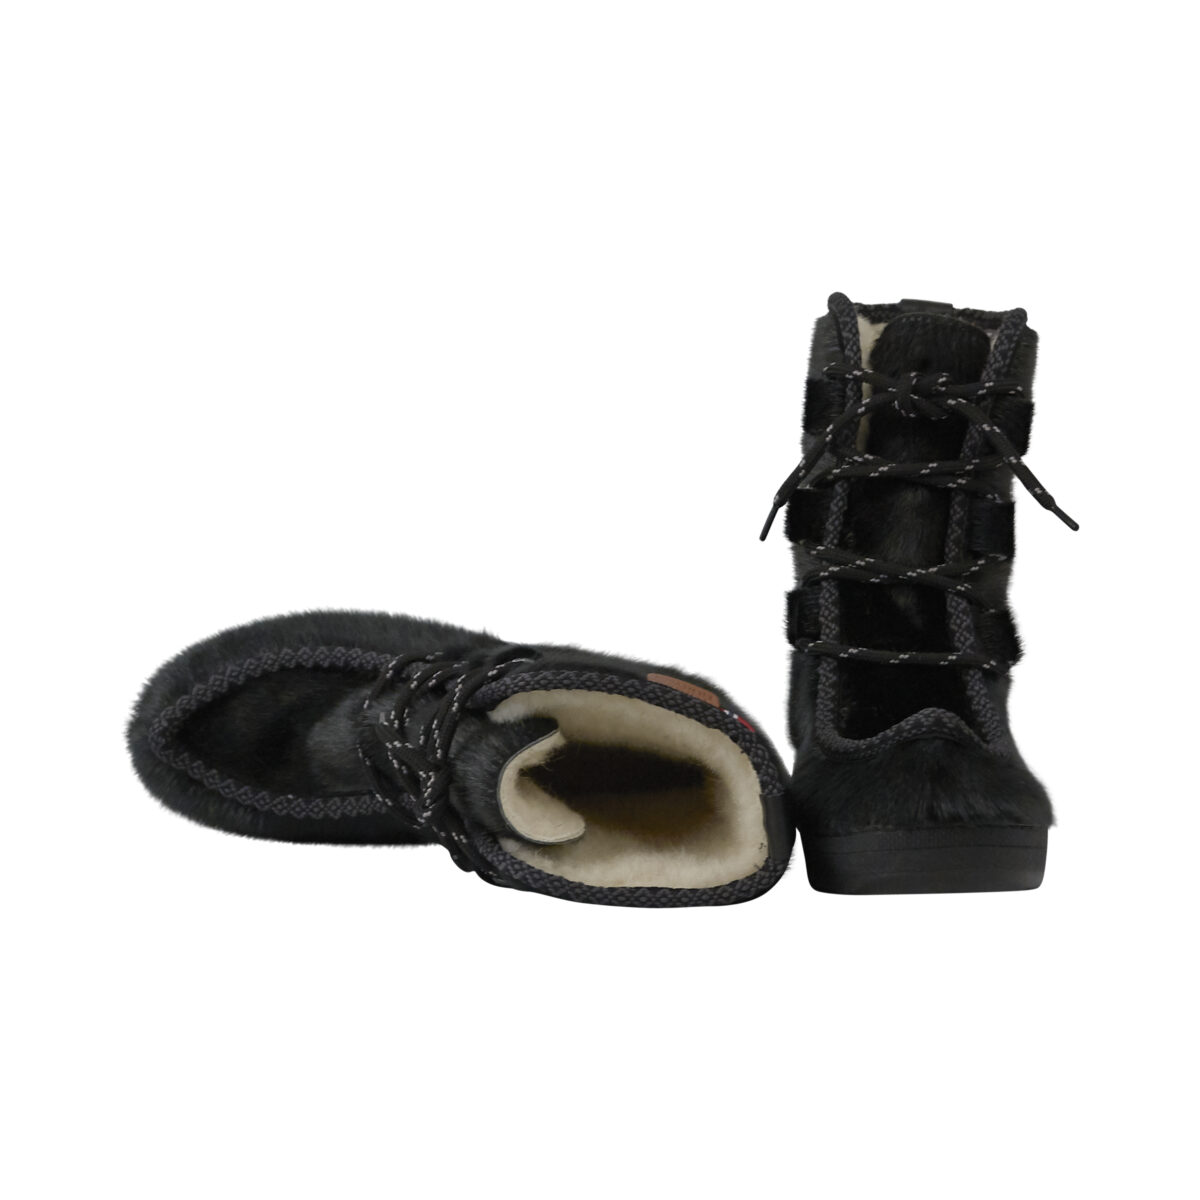 backup vækstdvale tyv Varme herrestøvler i sort, grønlandsk sælskind med en god sål.